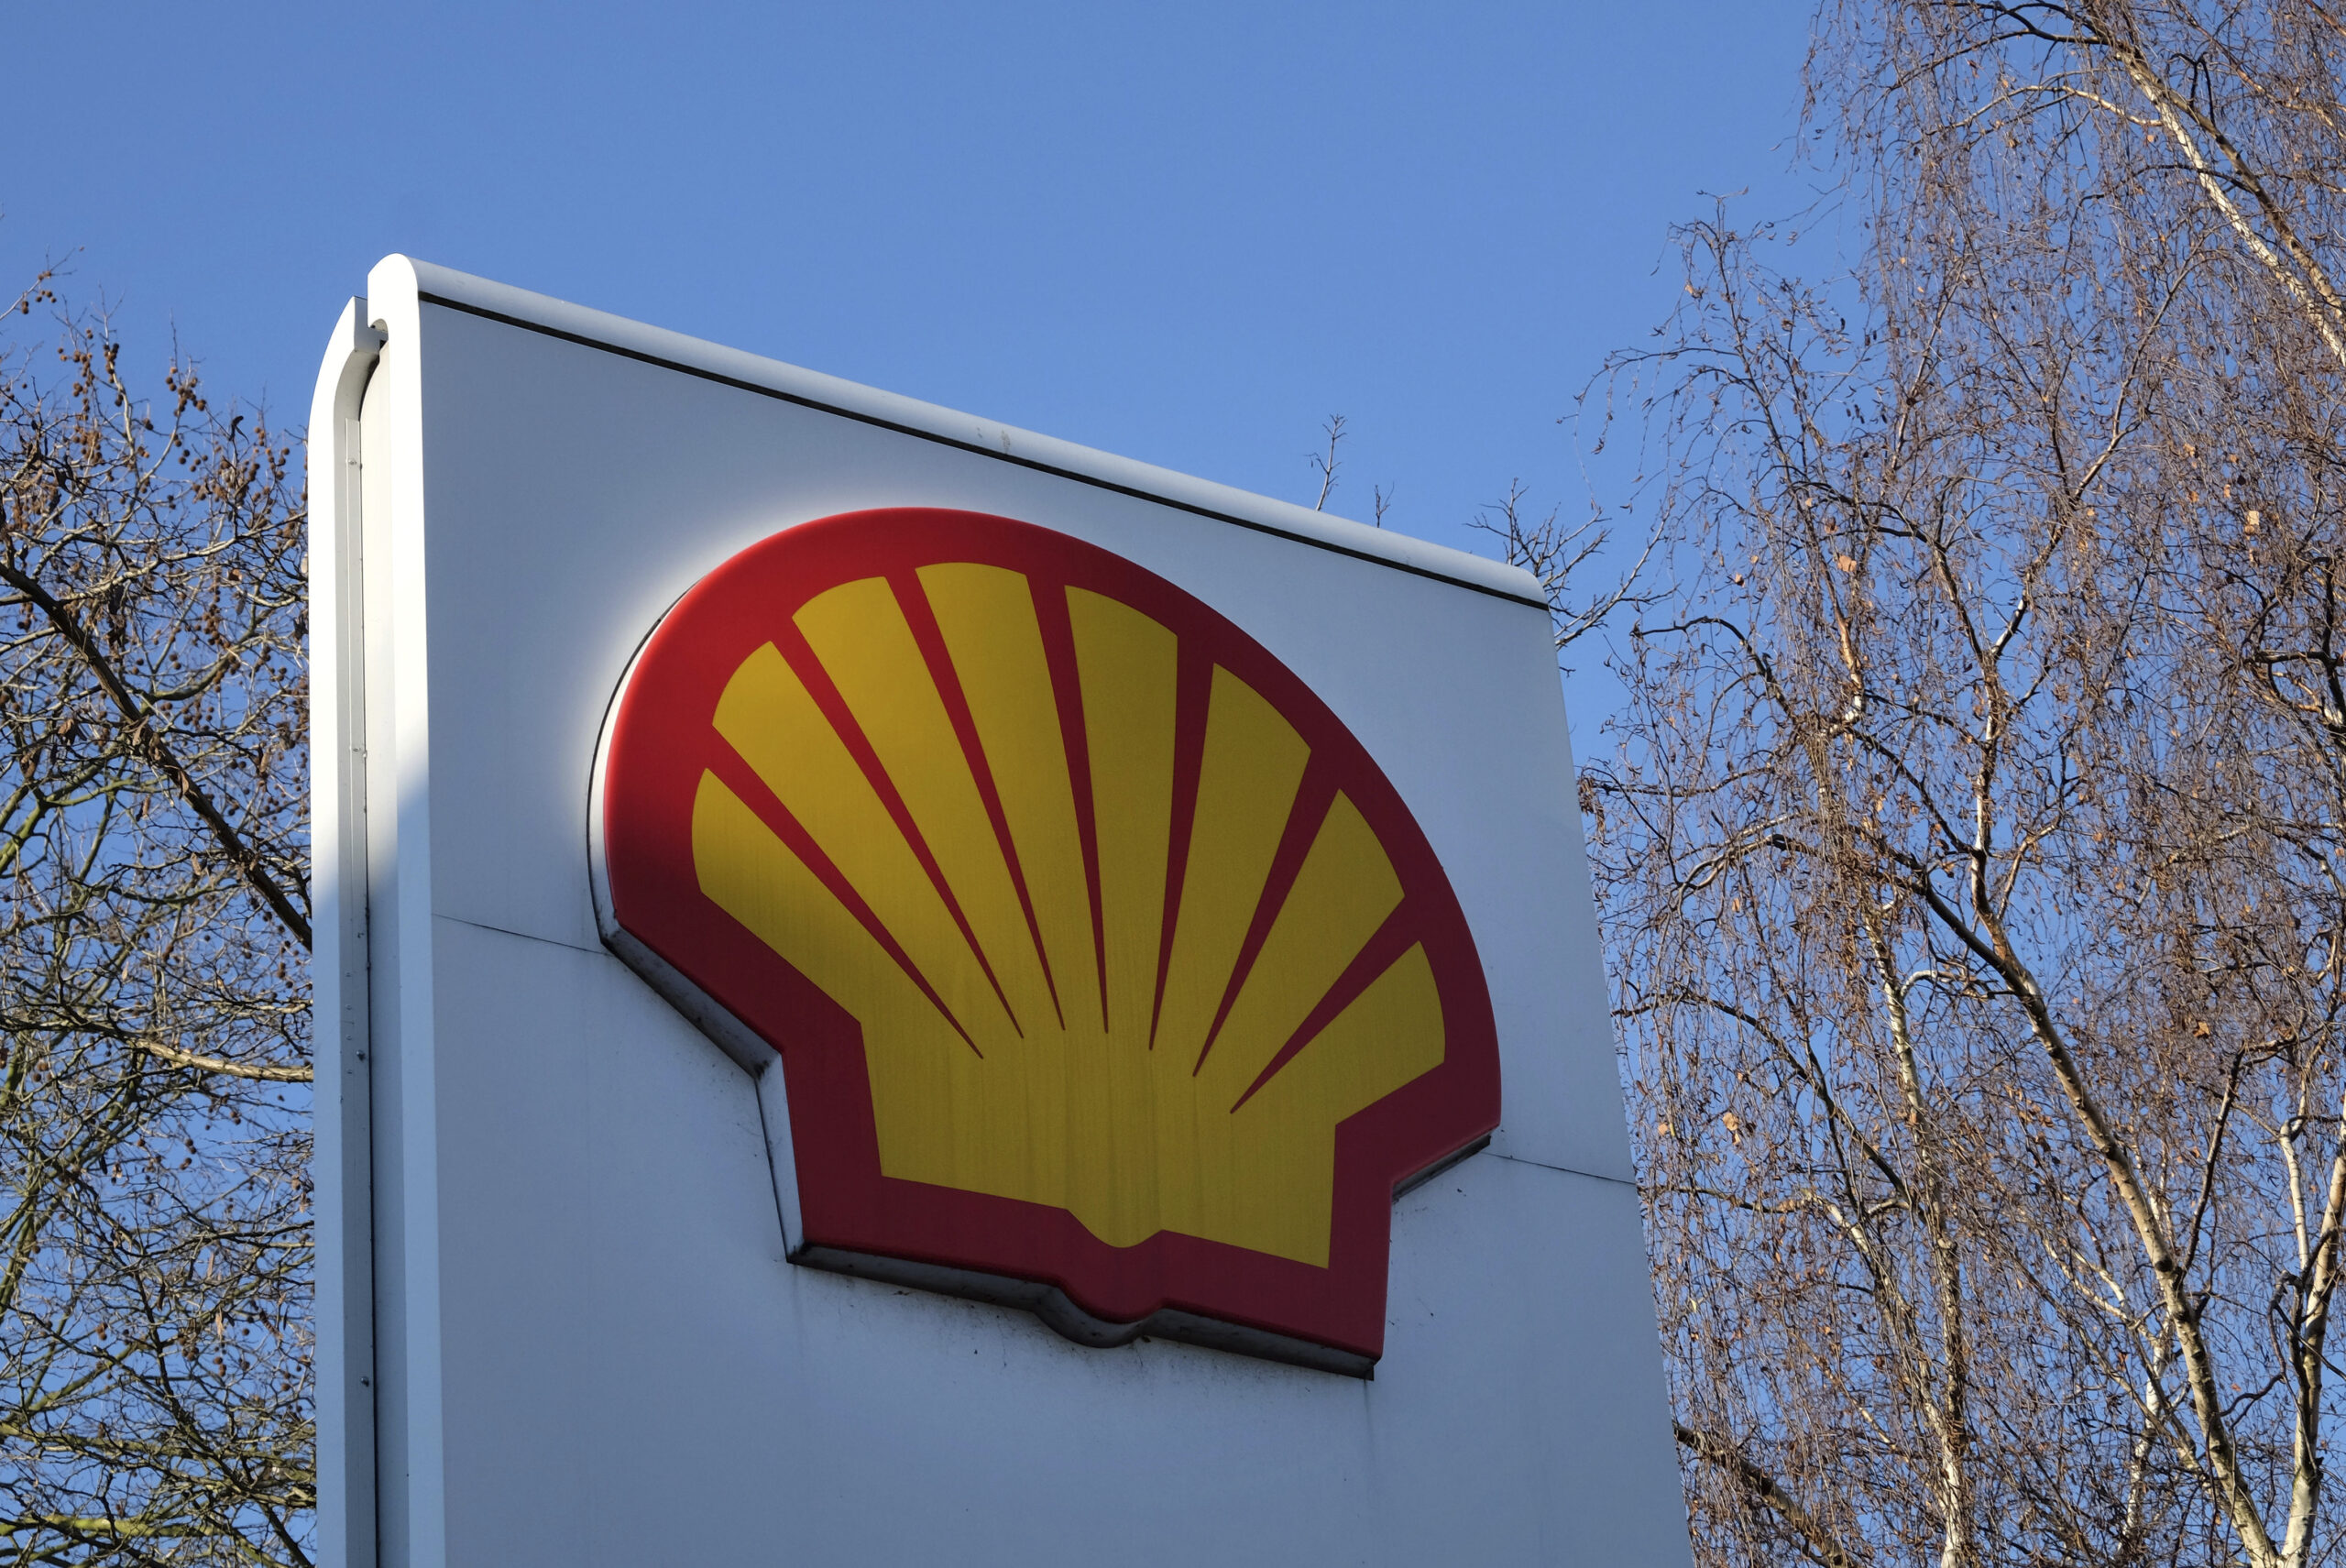 De Nederlandse rechtbank behandelt het beroep van Shell tegen de historische klimaatuitspraak